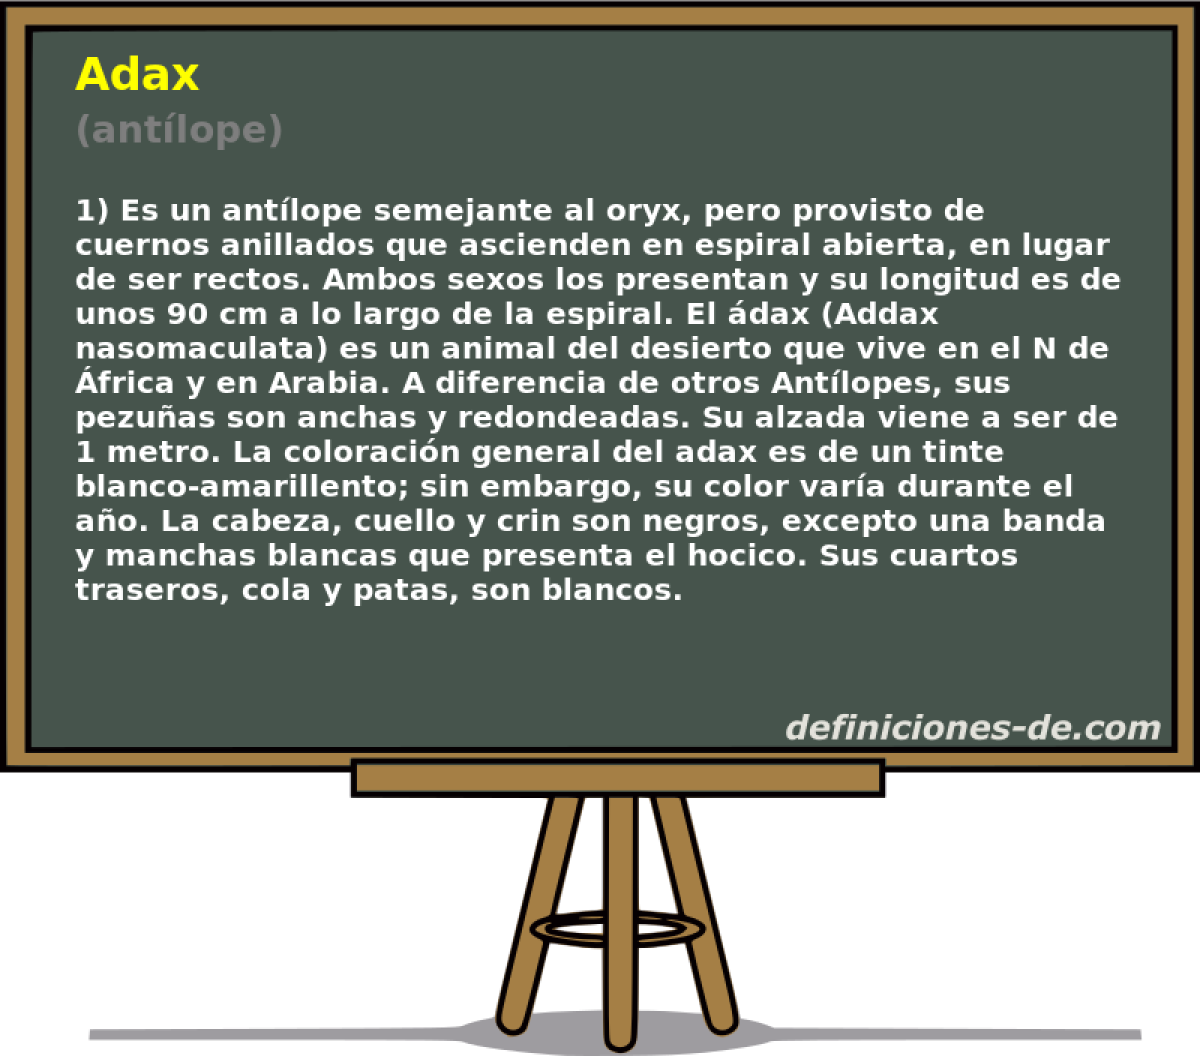 Adax (antlope)